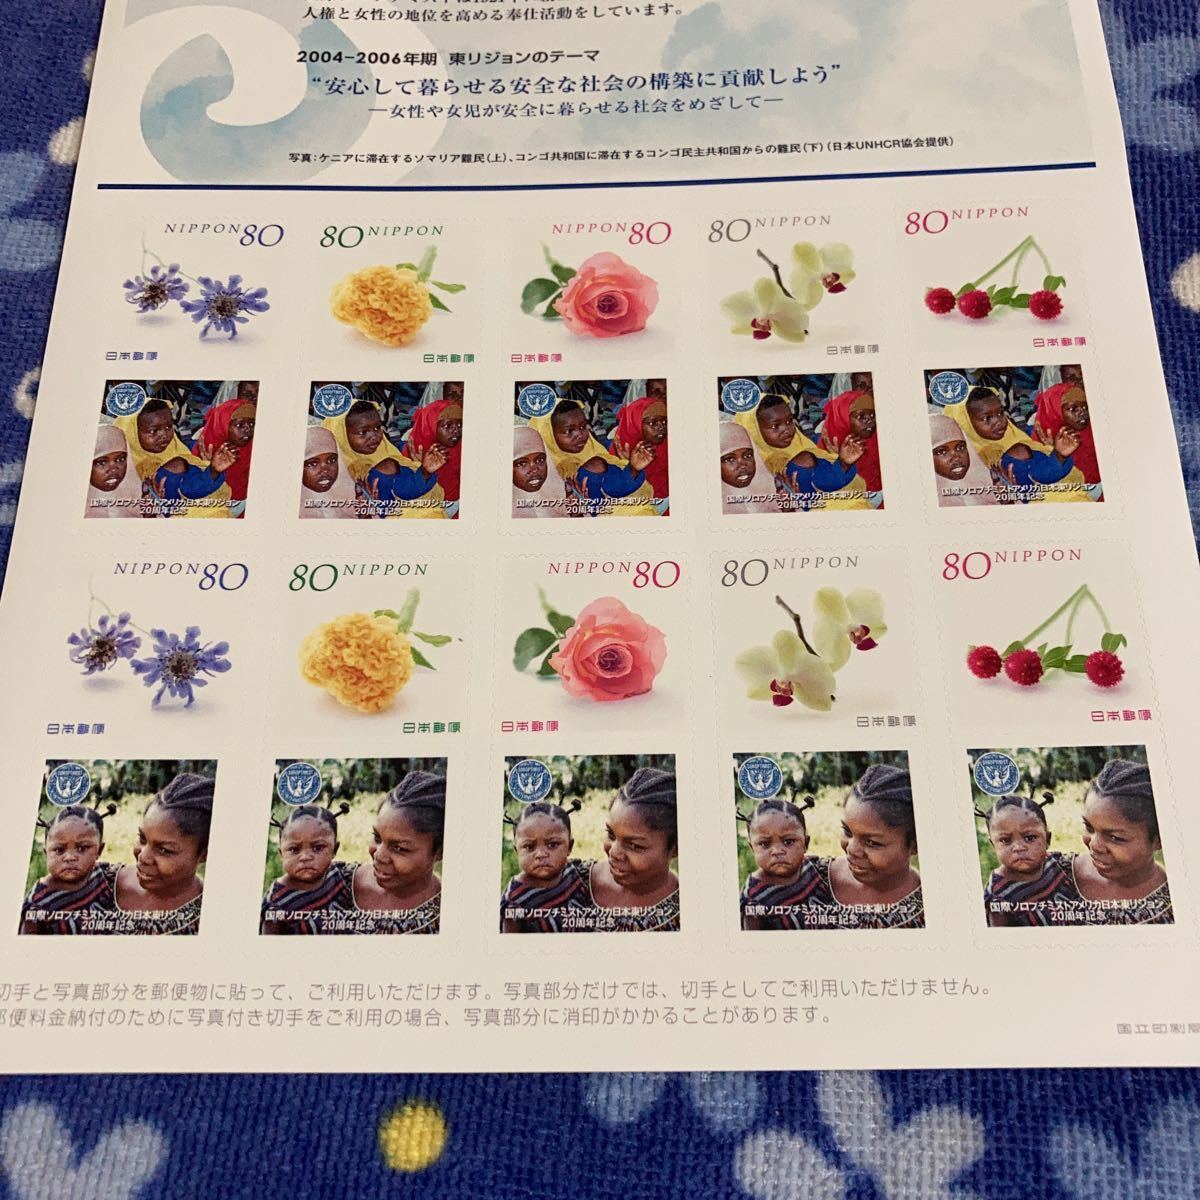 切手 写真付き 国際ソロプチミストアメリカ 日本東リジョン 20周年 安心して暮らせる安全な社会の構築に貢献しよう“ フレーム 80円×10枚_画像2